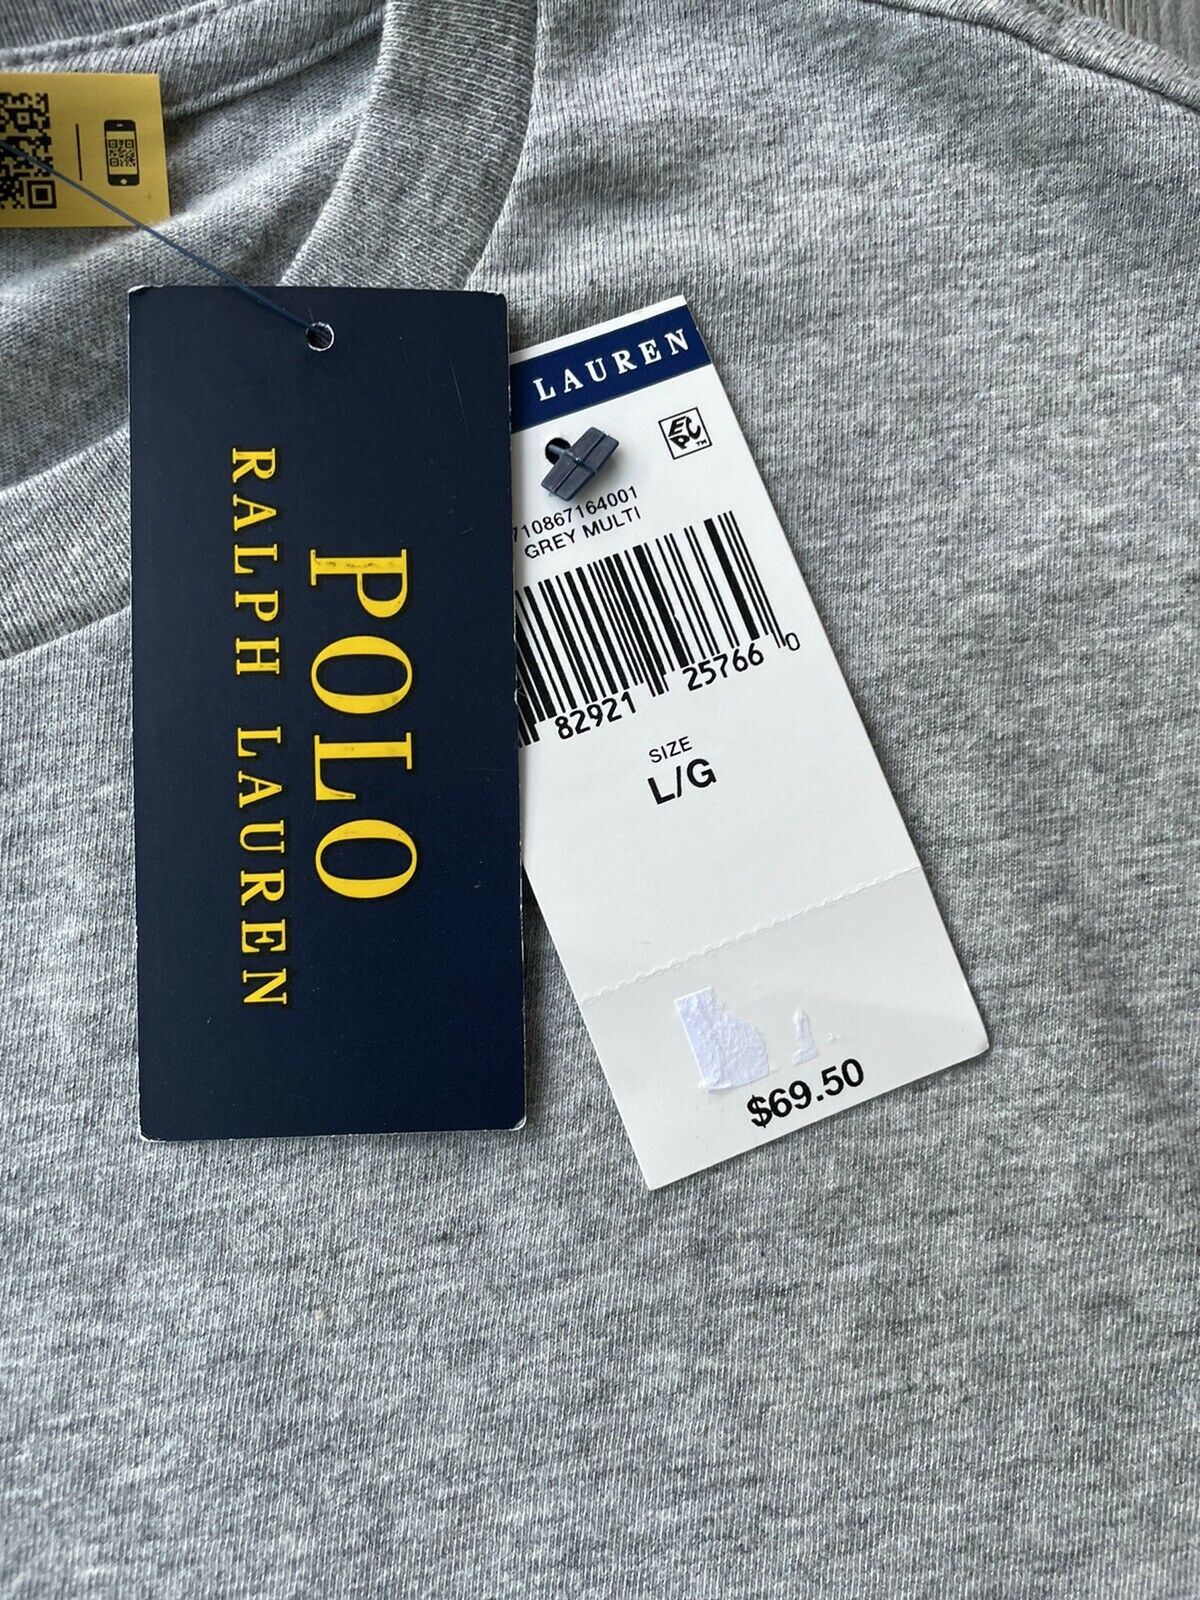 NWT Polo Ralph Lauren Men's Preppy Bear Classic Fit Tri-color T-Shirt Gray Large